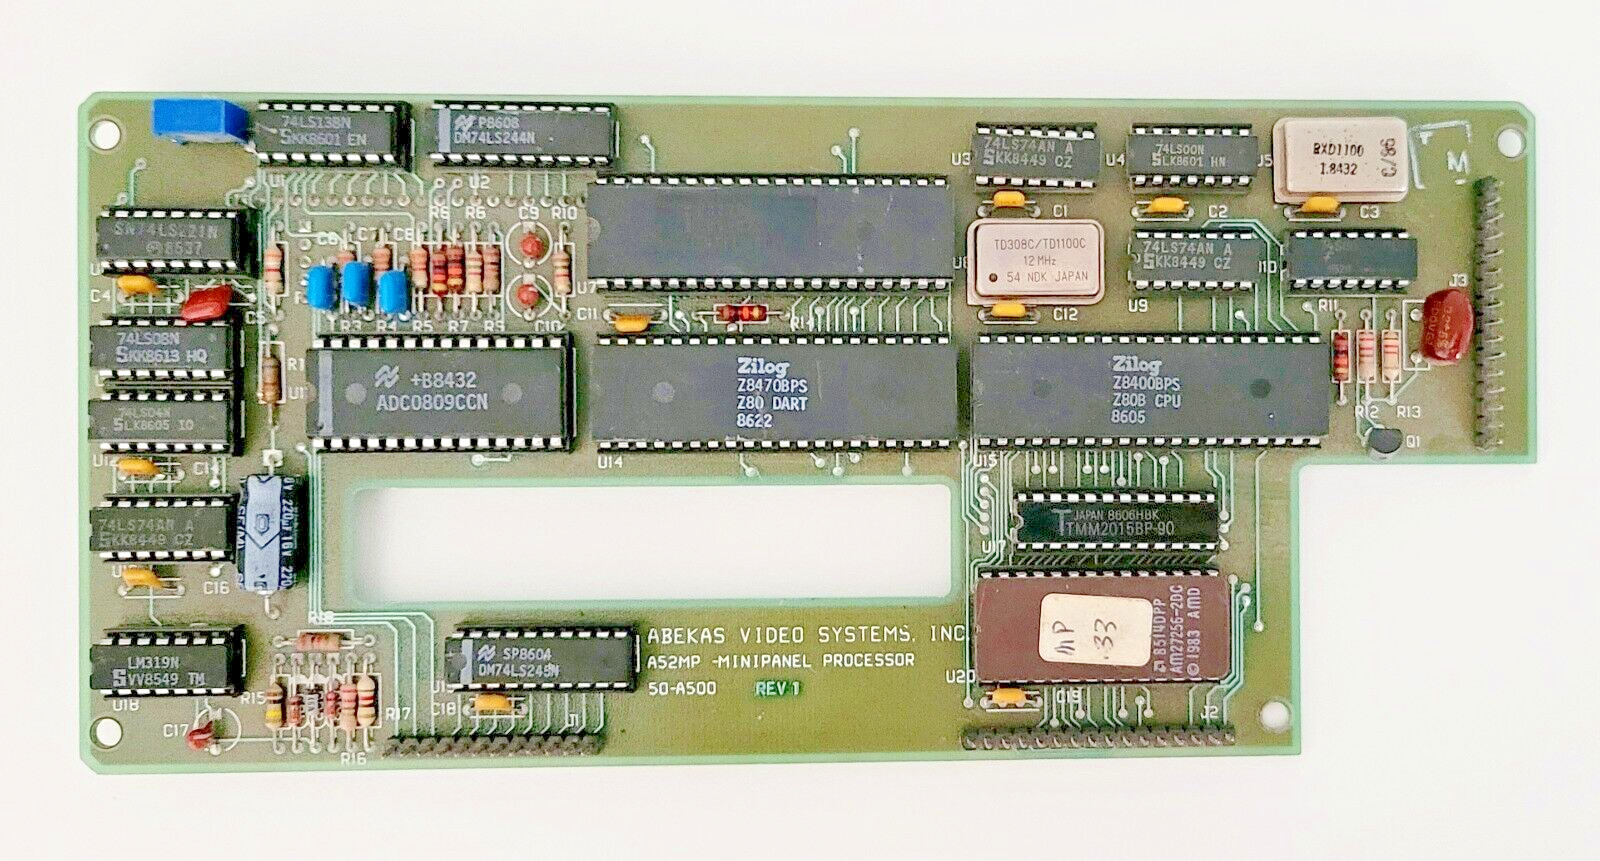 ABEKAS Video Systems MINIPANEL Processor Circuit Board - A52MP - 50-A500 Untest